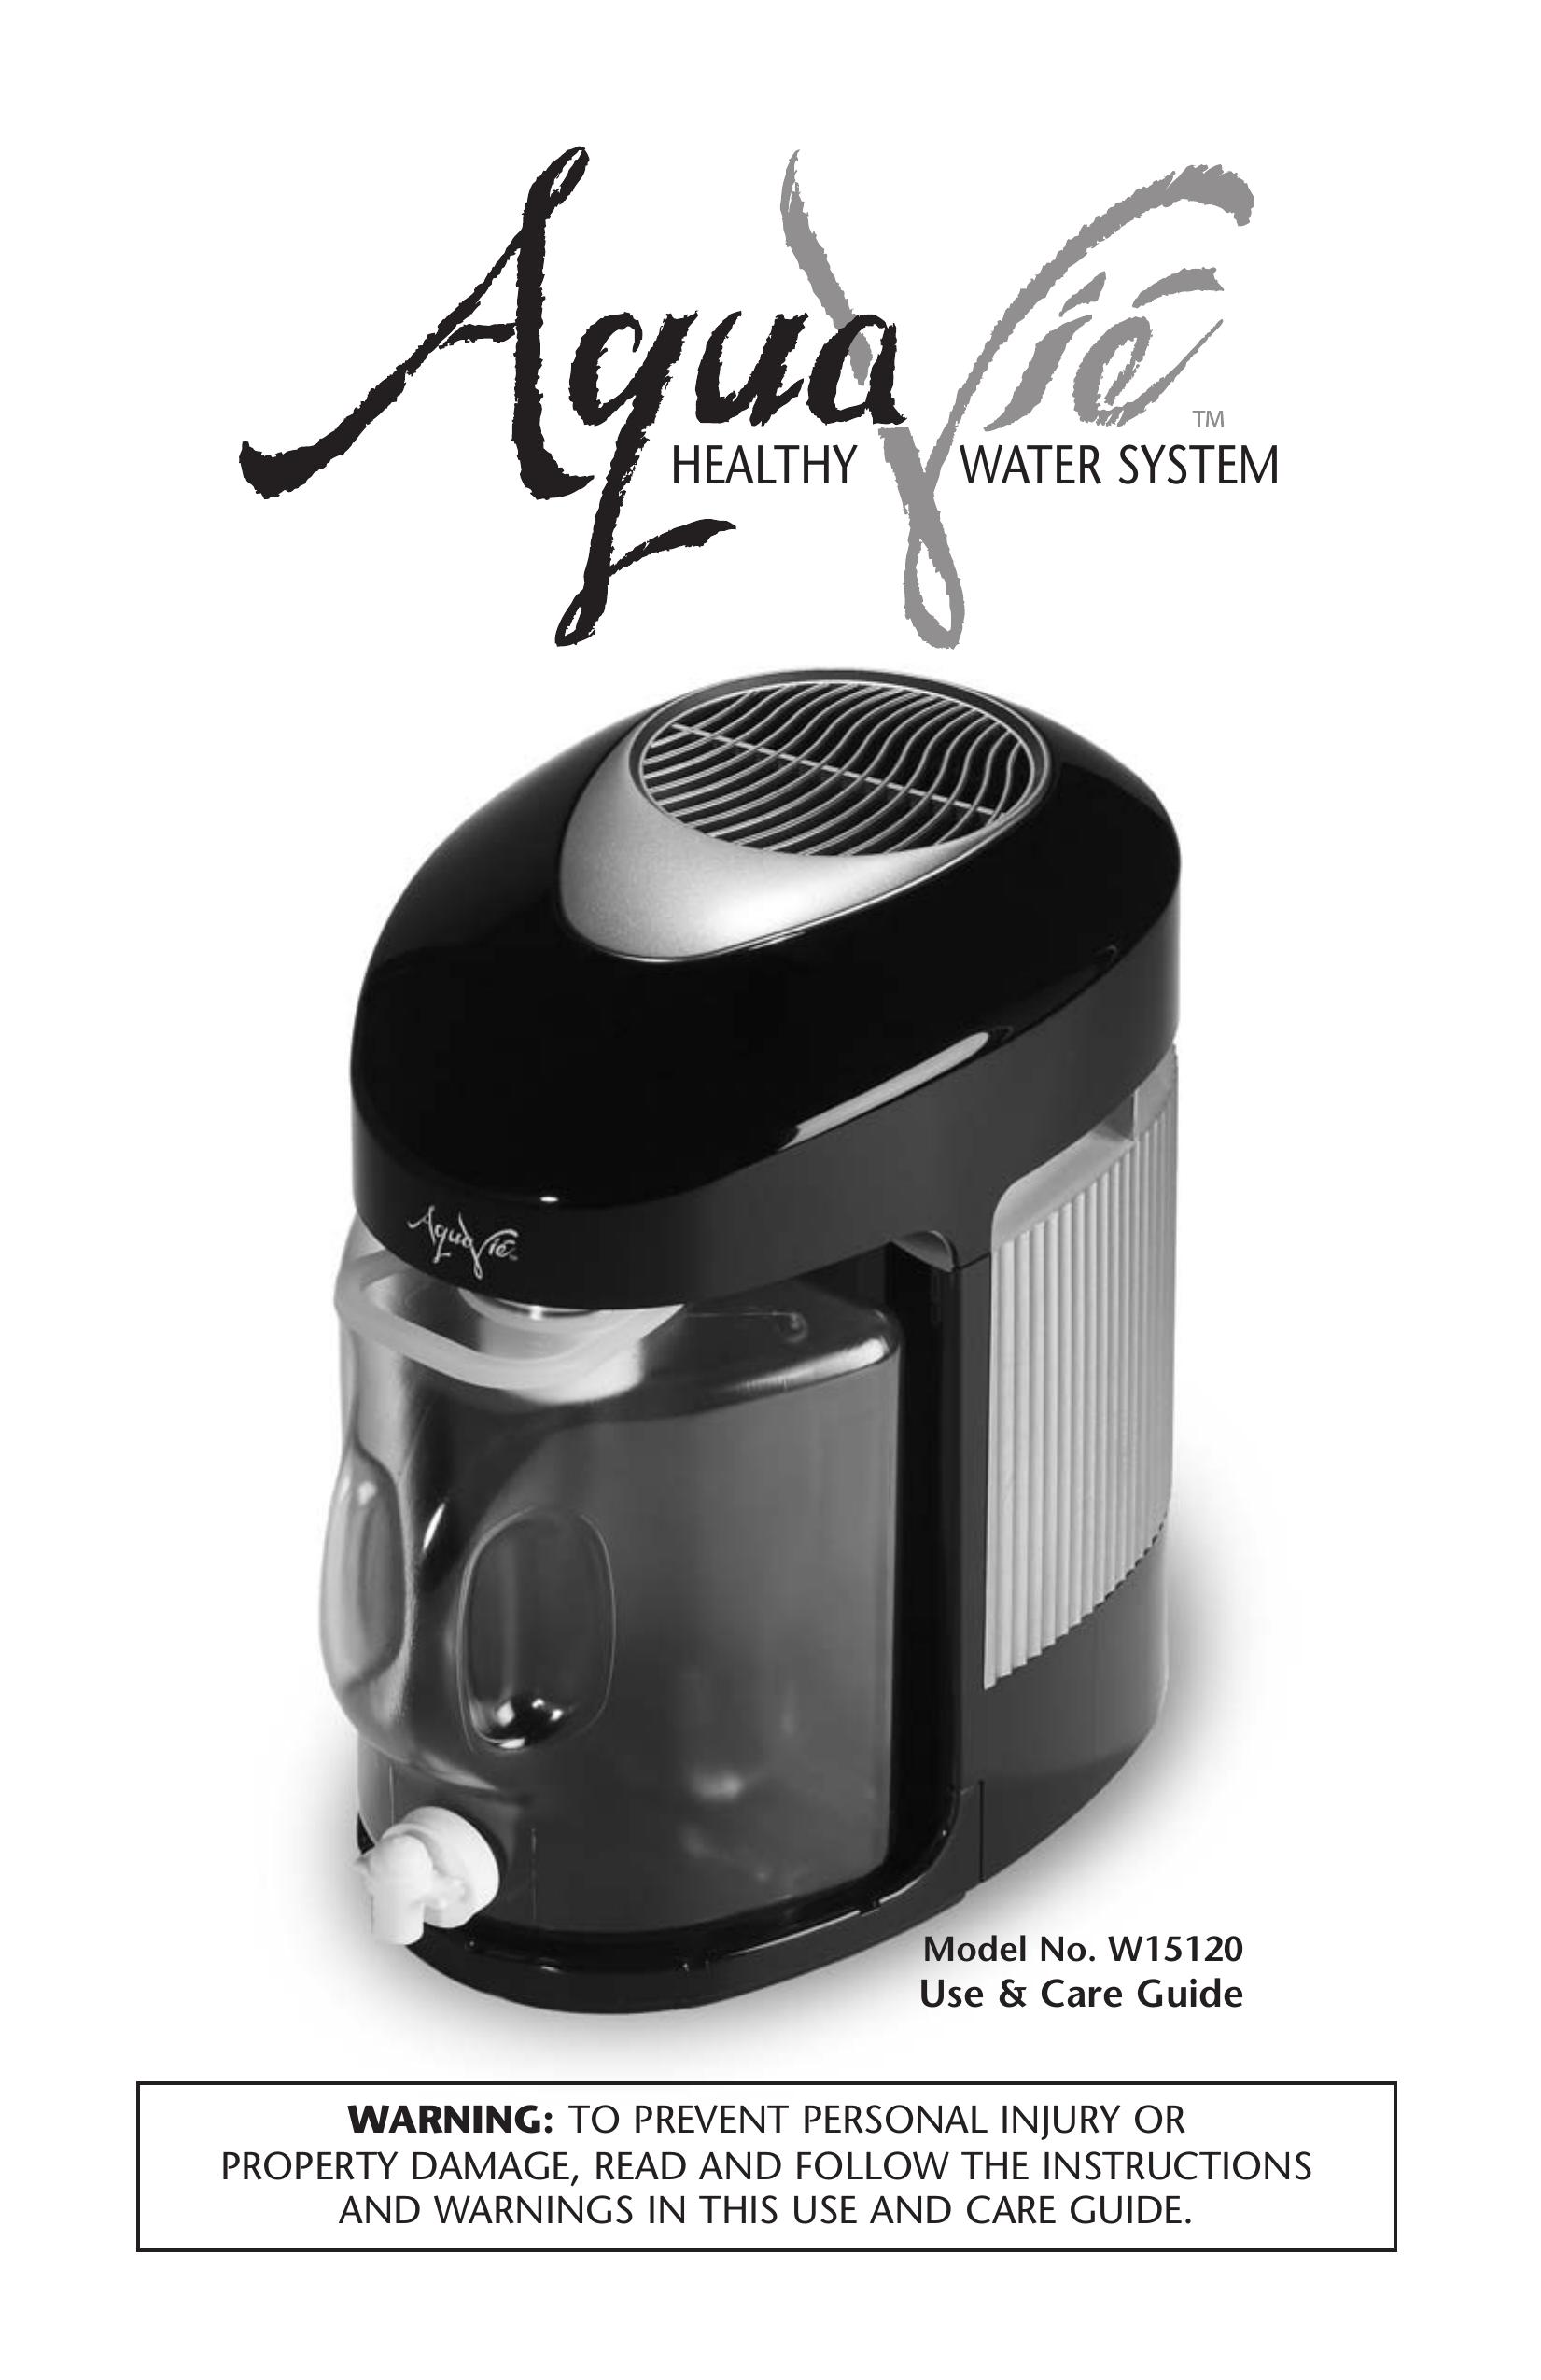 Regal Ware W15120 Water Dispenser User Manual